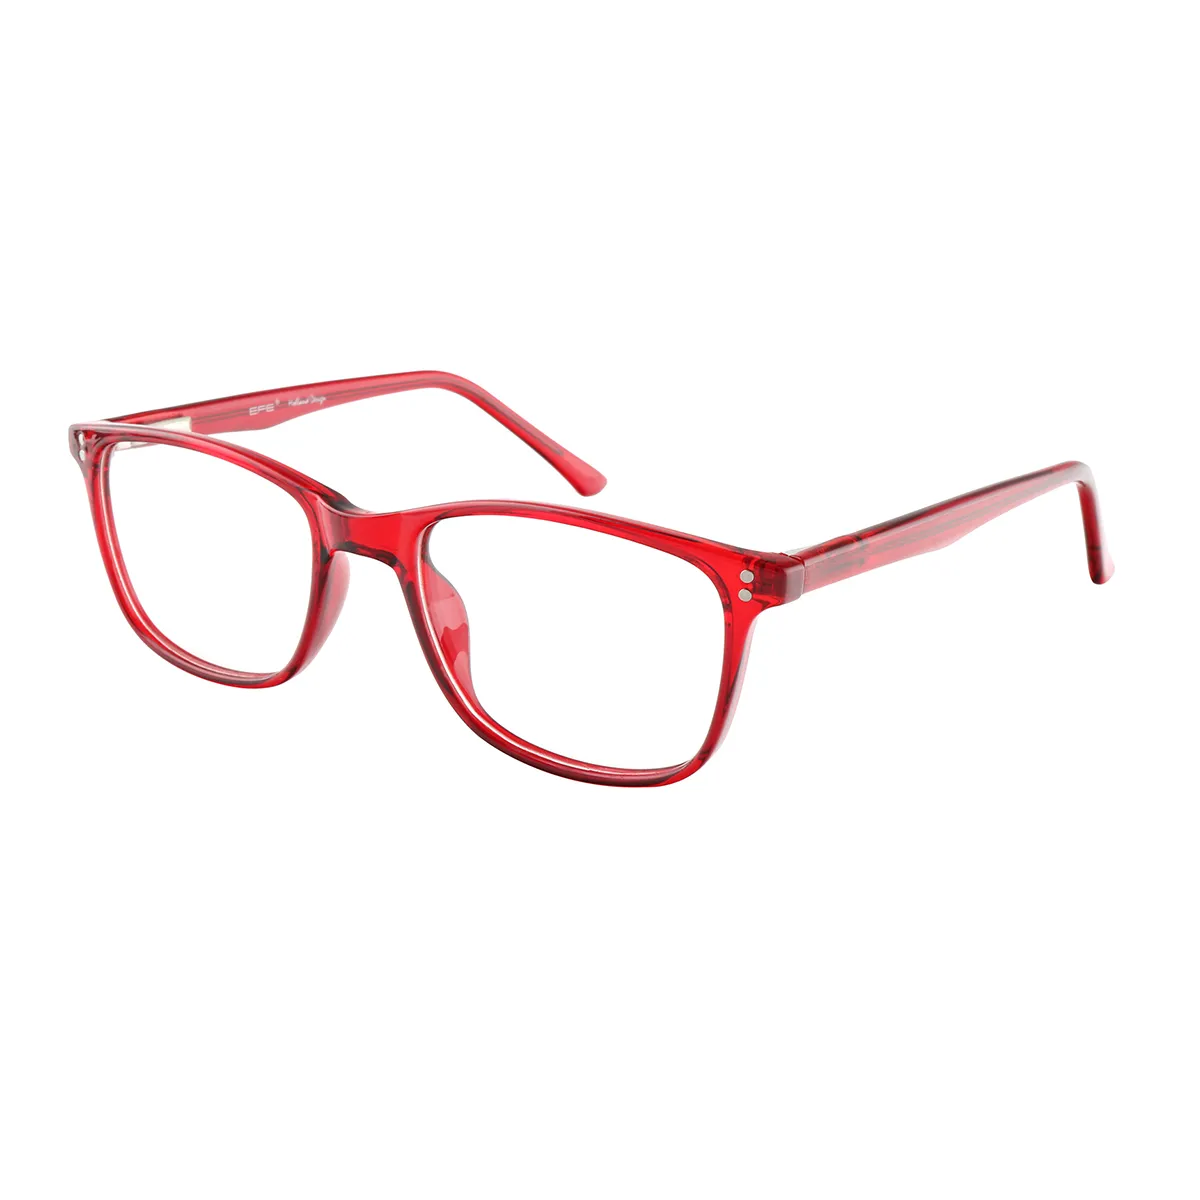 Herron - Square Red Glasses for Men & Women - EFE